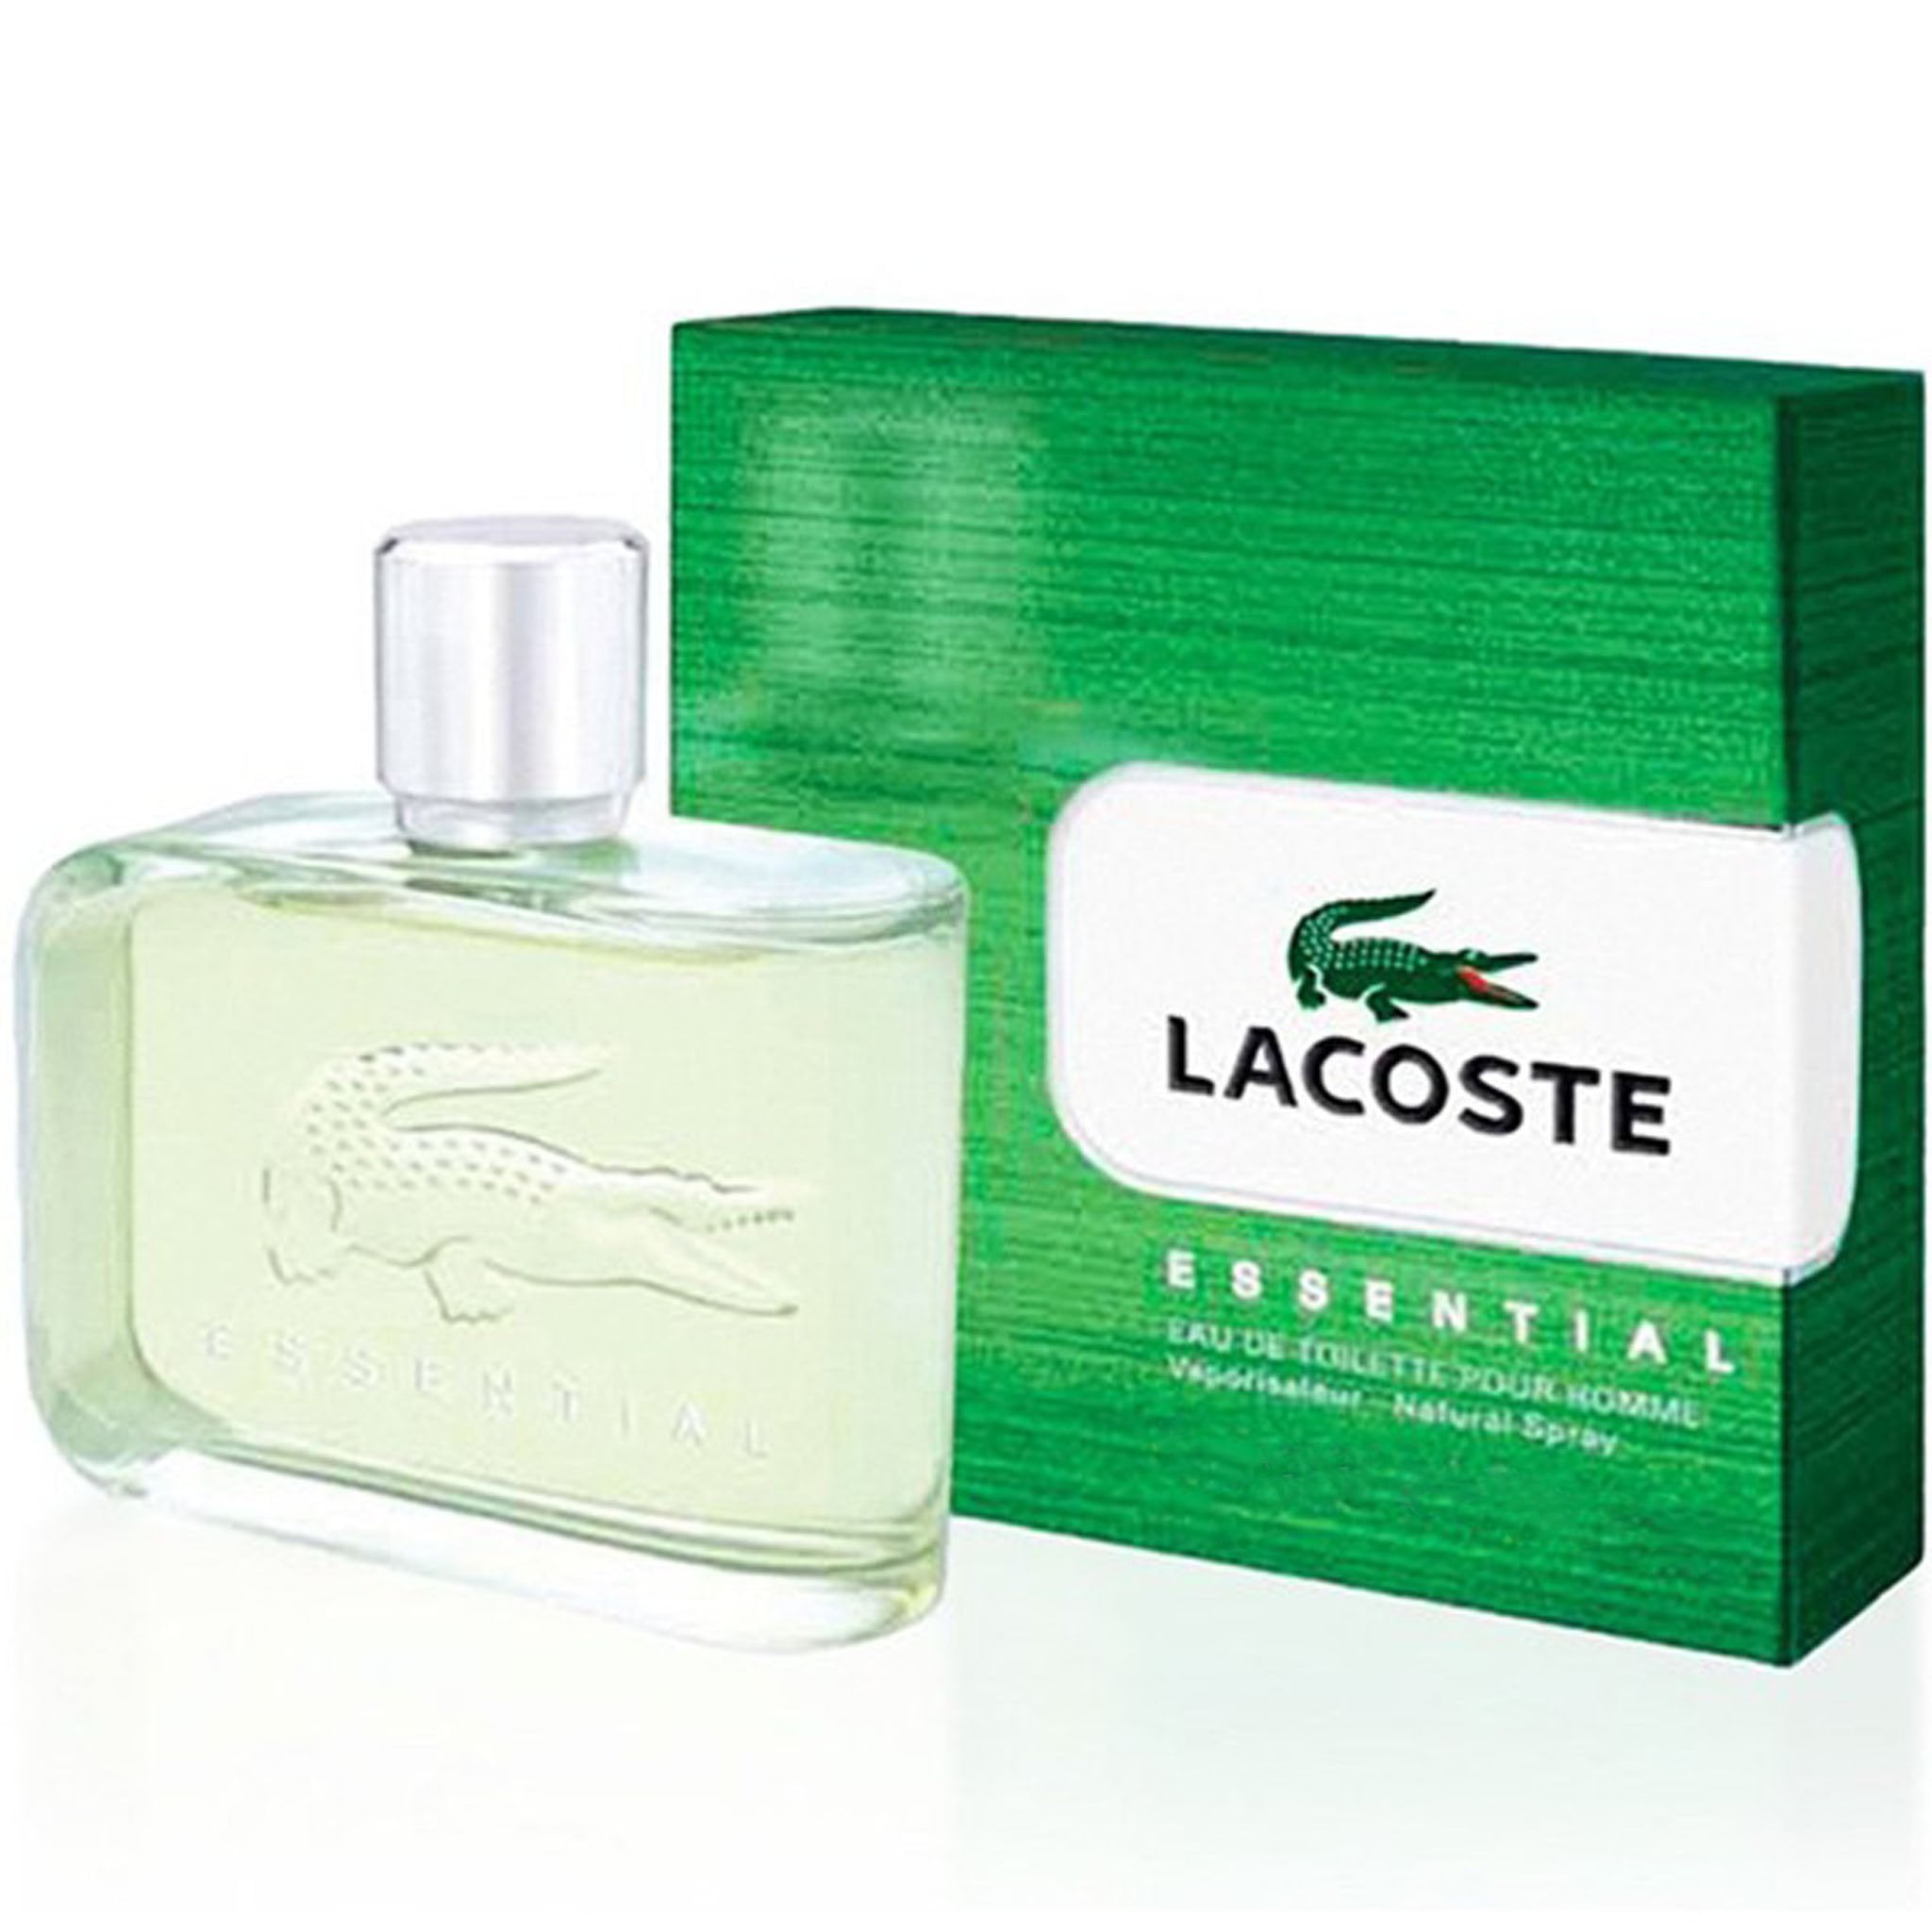 Lacoste мужская туалетная вода. Мужская туалетная вода Lacoste Essential. Lacoste Essential men EDT 125 ml. Lacoste Essential 125ml. Lacoste Essential EDT, 125 ml.